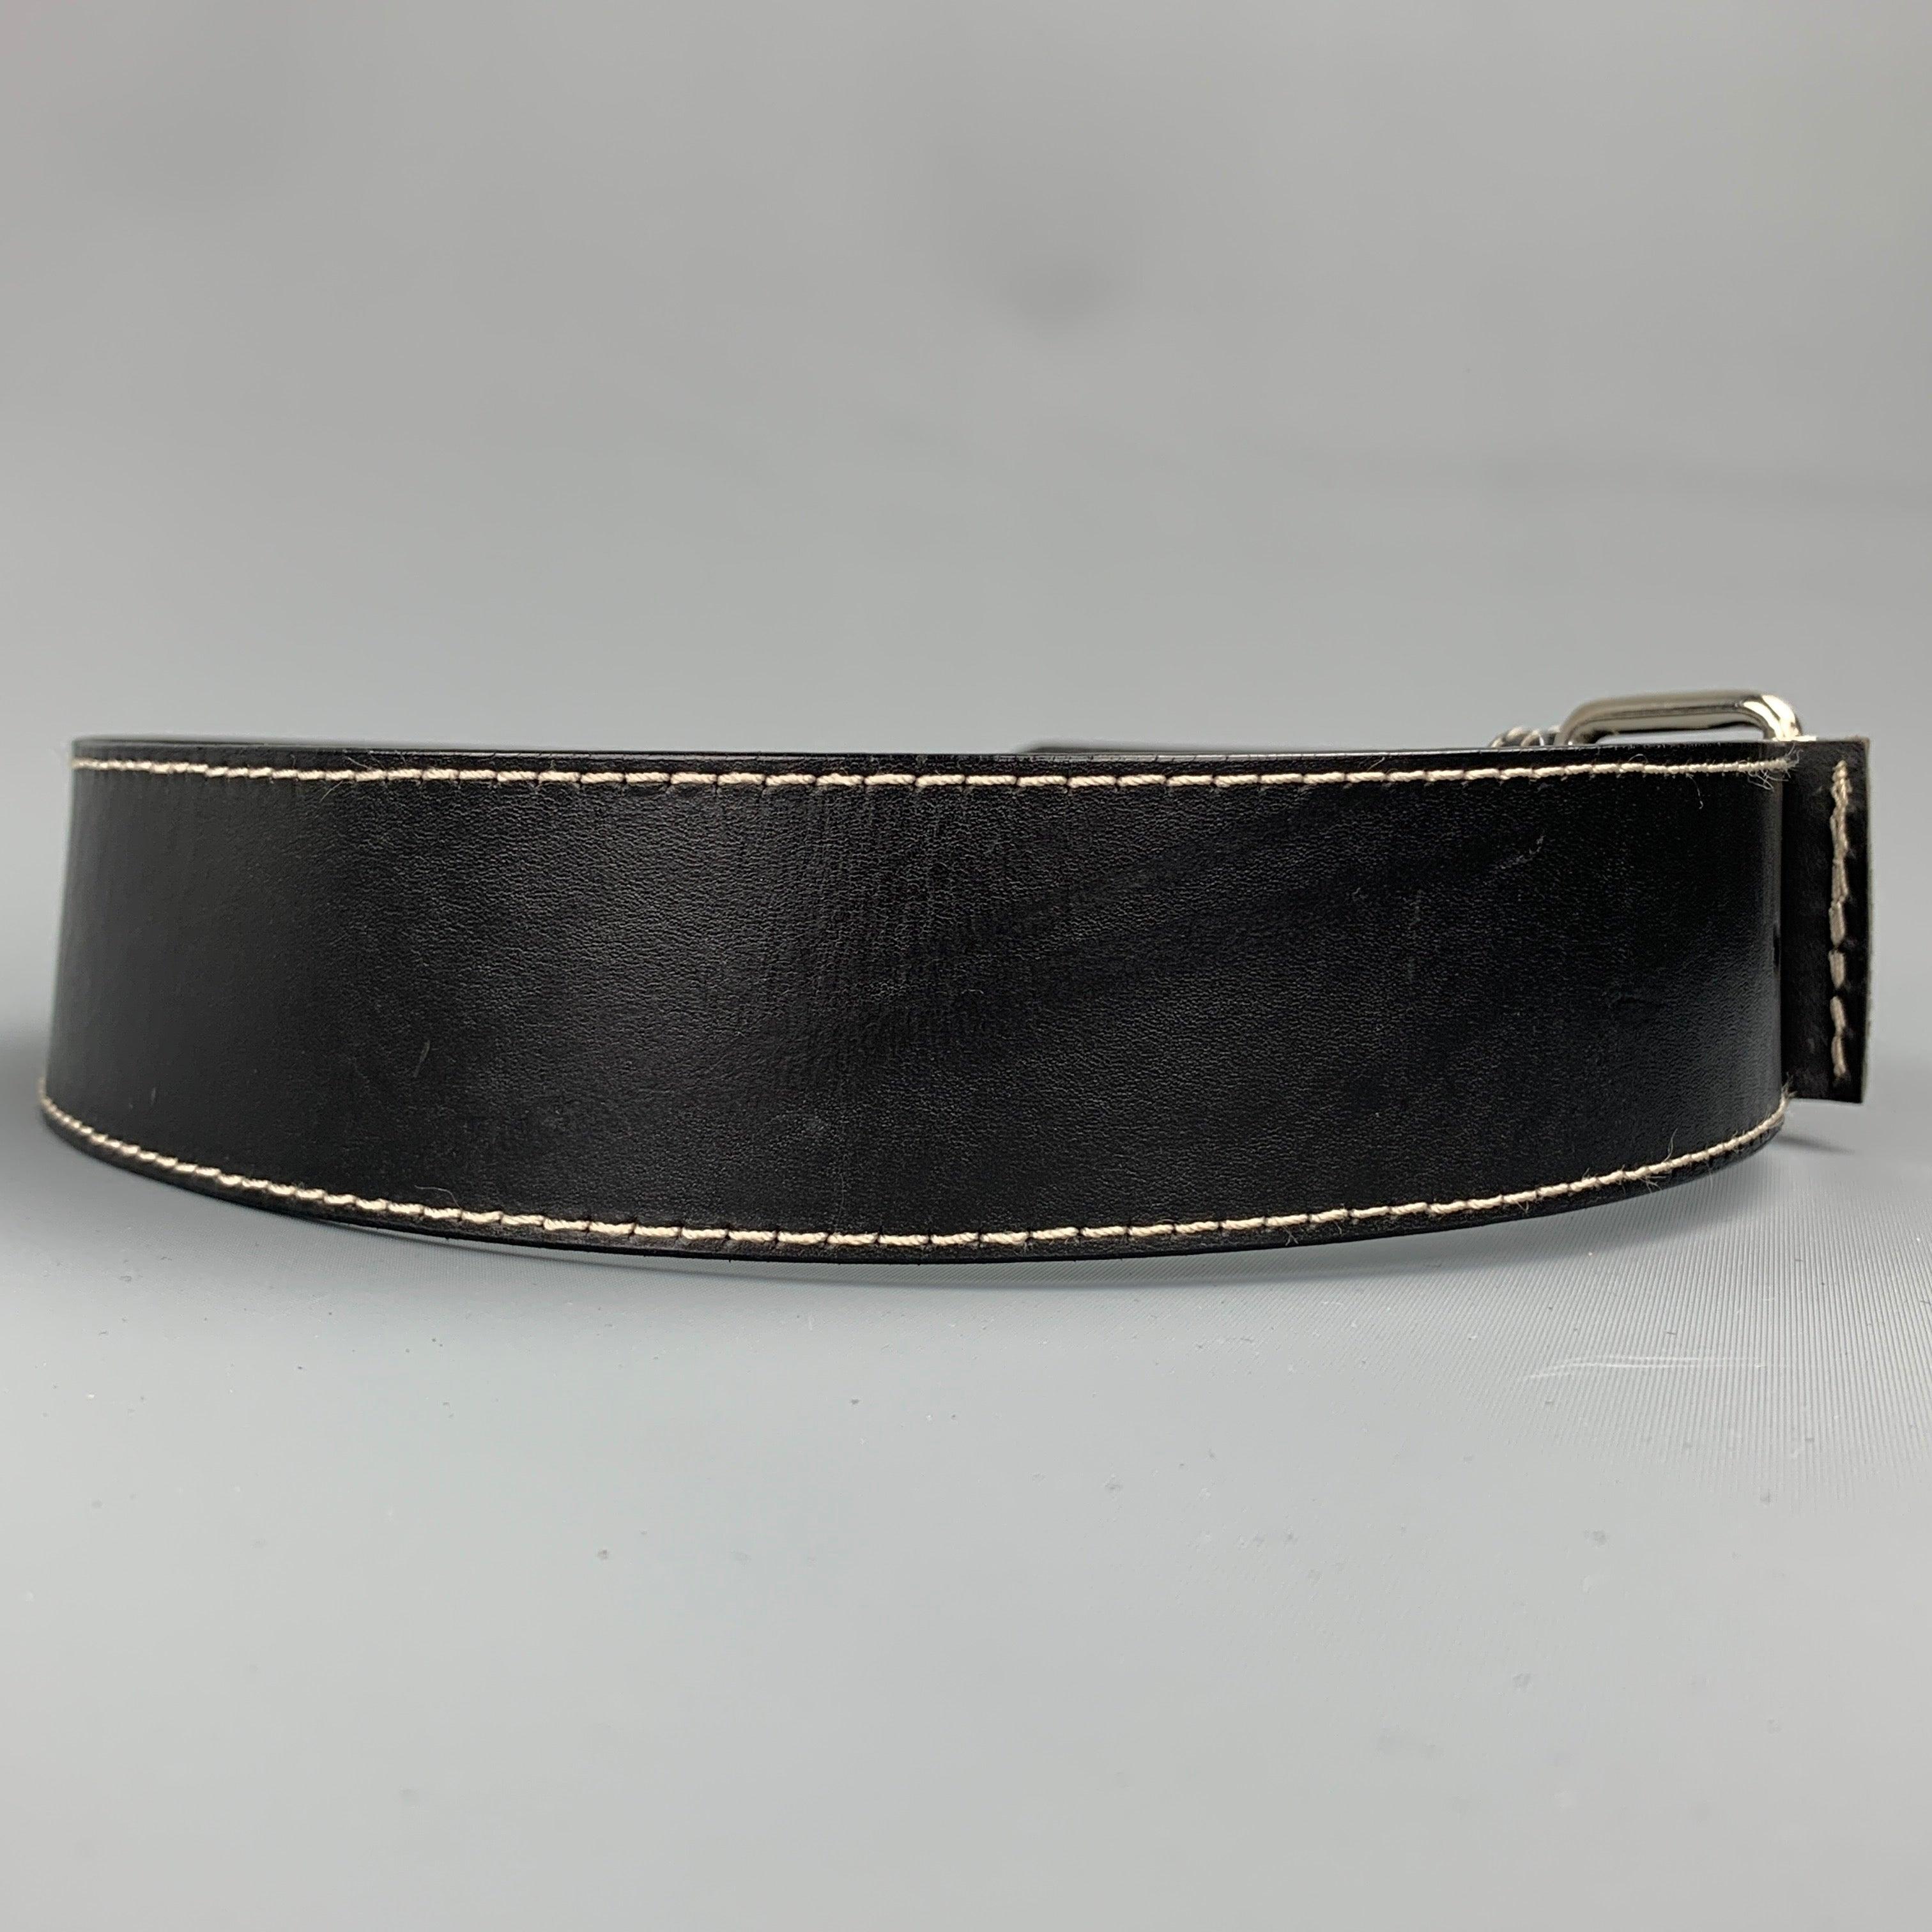 Der Gürtel von IVAN GRUNDAHL besteht aus schwarzem Leder mit Kontrastnähten und einer silberfarbenen Schnalle.
Gebrauchtes Zustand. 

Markiert:   80Länge: 38 Zoll 
Breite: 2 Zoll 
Passt: 28 Zoll  - 32 Zoll 
Schnalle: 1,5 Zoll 
  
  
 
Sui